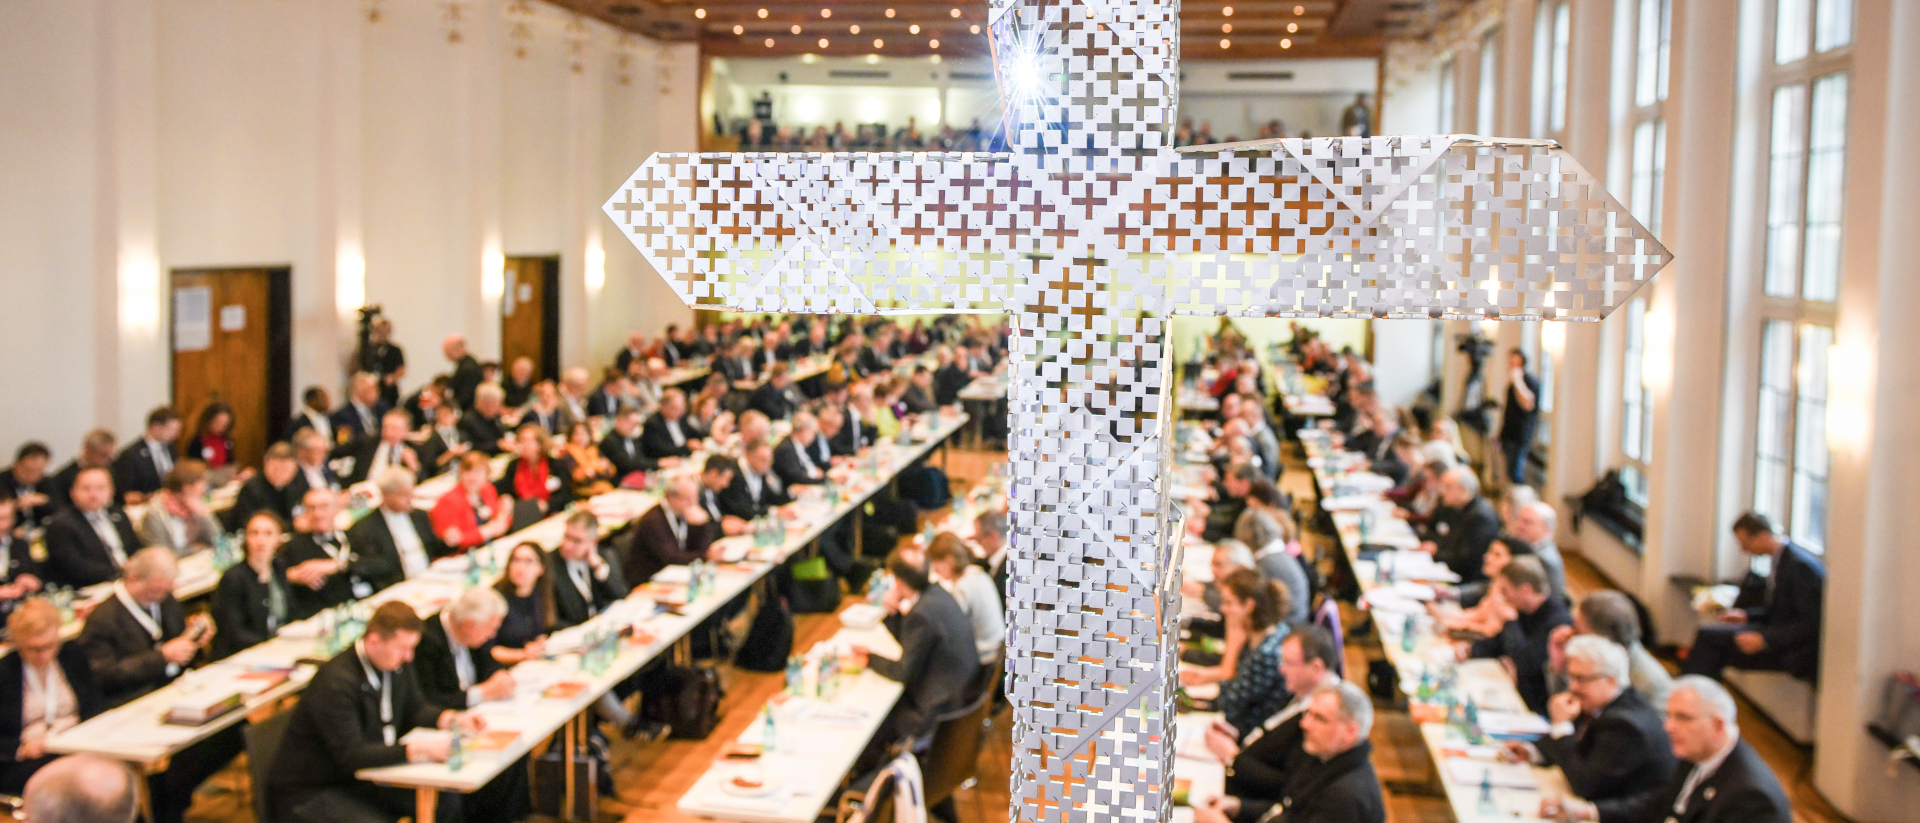 Le délégués allemands se sont rencontrés du 30 janvier au 1er février 2020 dans le monastère dominicain de Francfort pour la première assemblée synodale |  © KNA